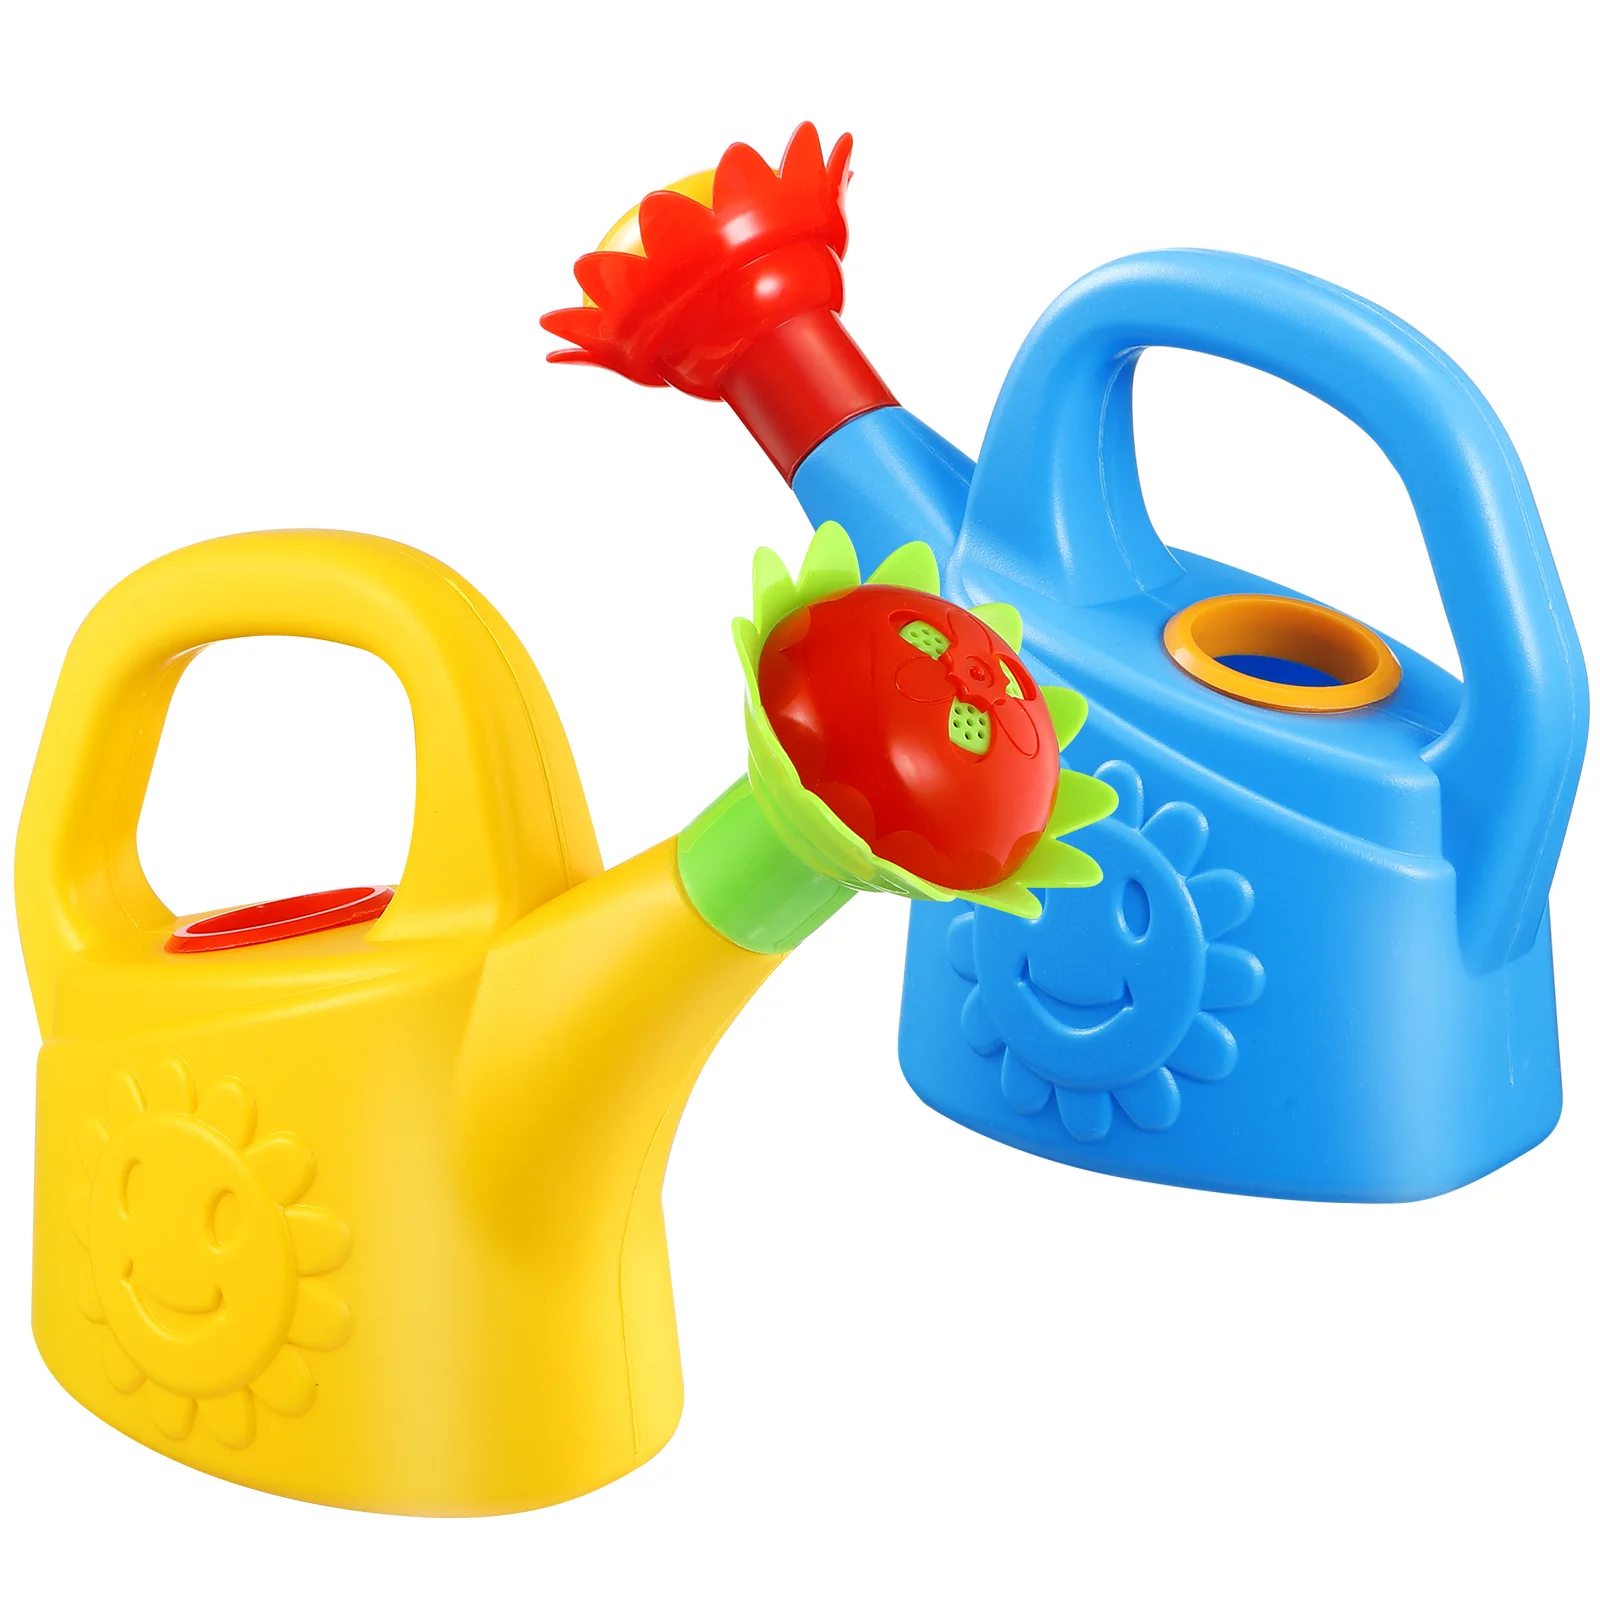 

Игрушки для ванны для девочек, канистры для полива, Детские Игрушки для ванны, Детские канистры с перламутром, обучающая игрушка для малышей